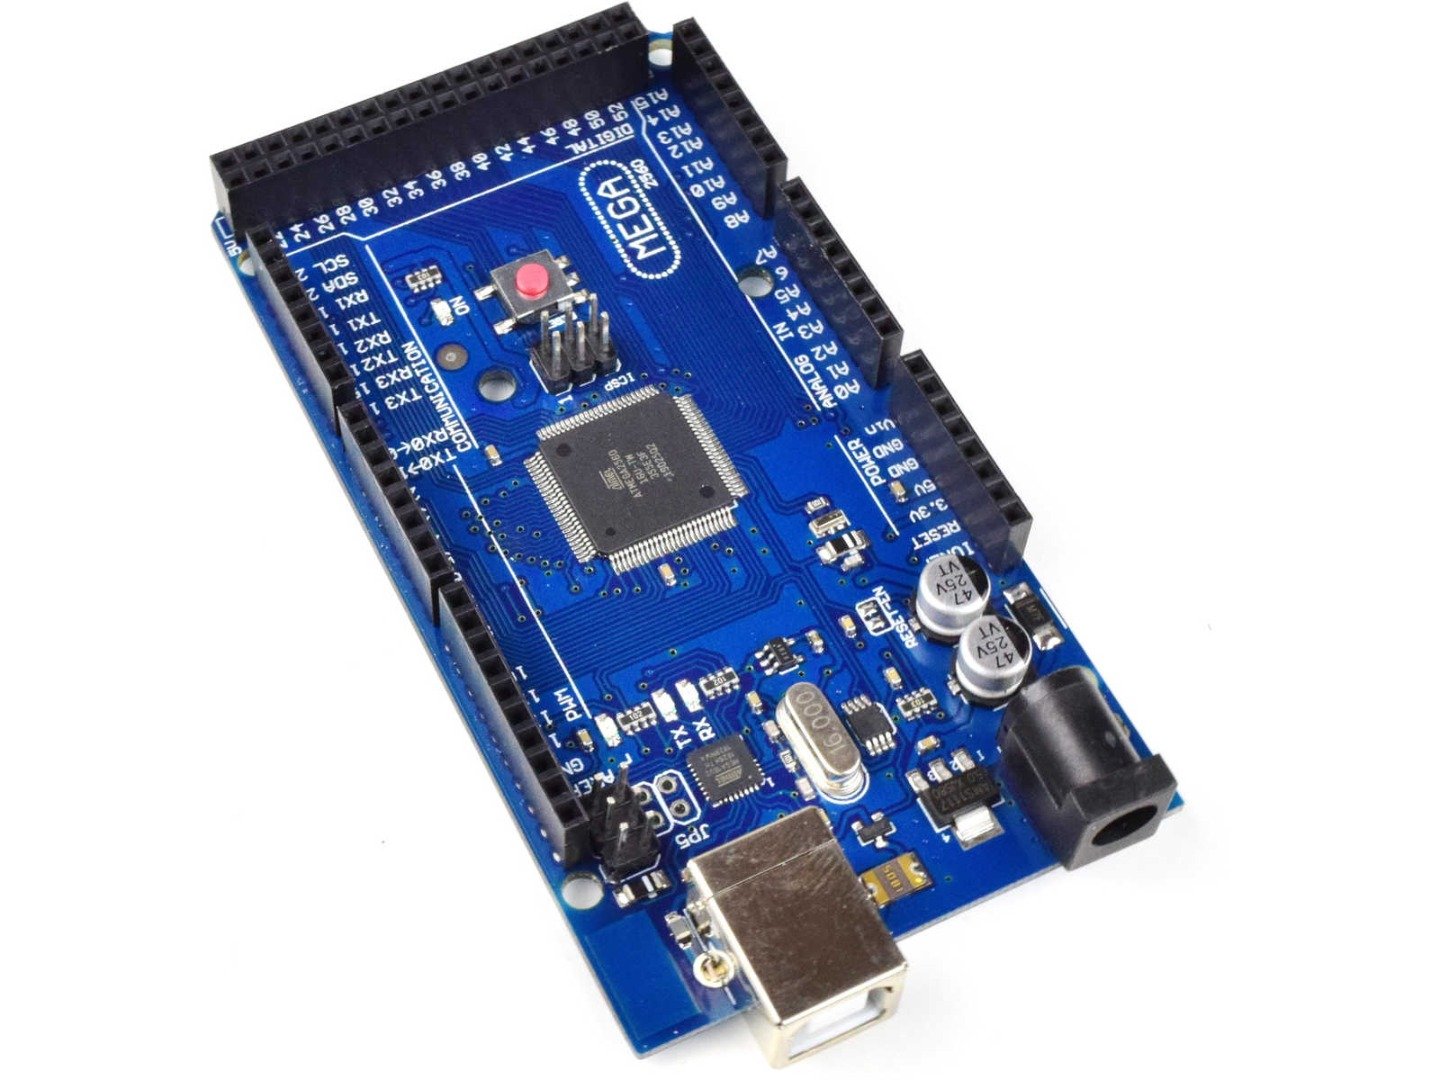 MEGA 2560 R3 module ATmega2560 + ATmega16u2 (100% compatible with Arduino) 6